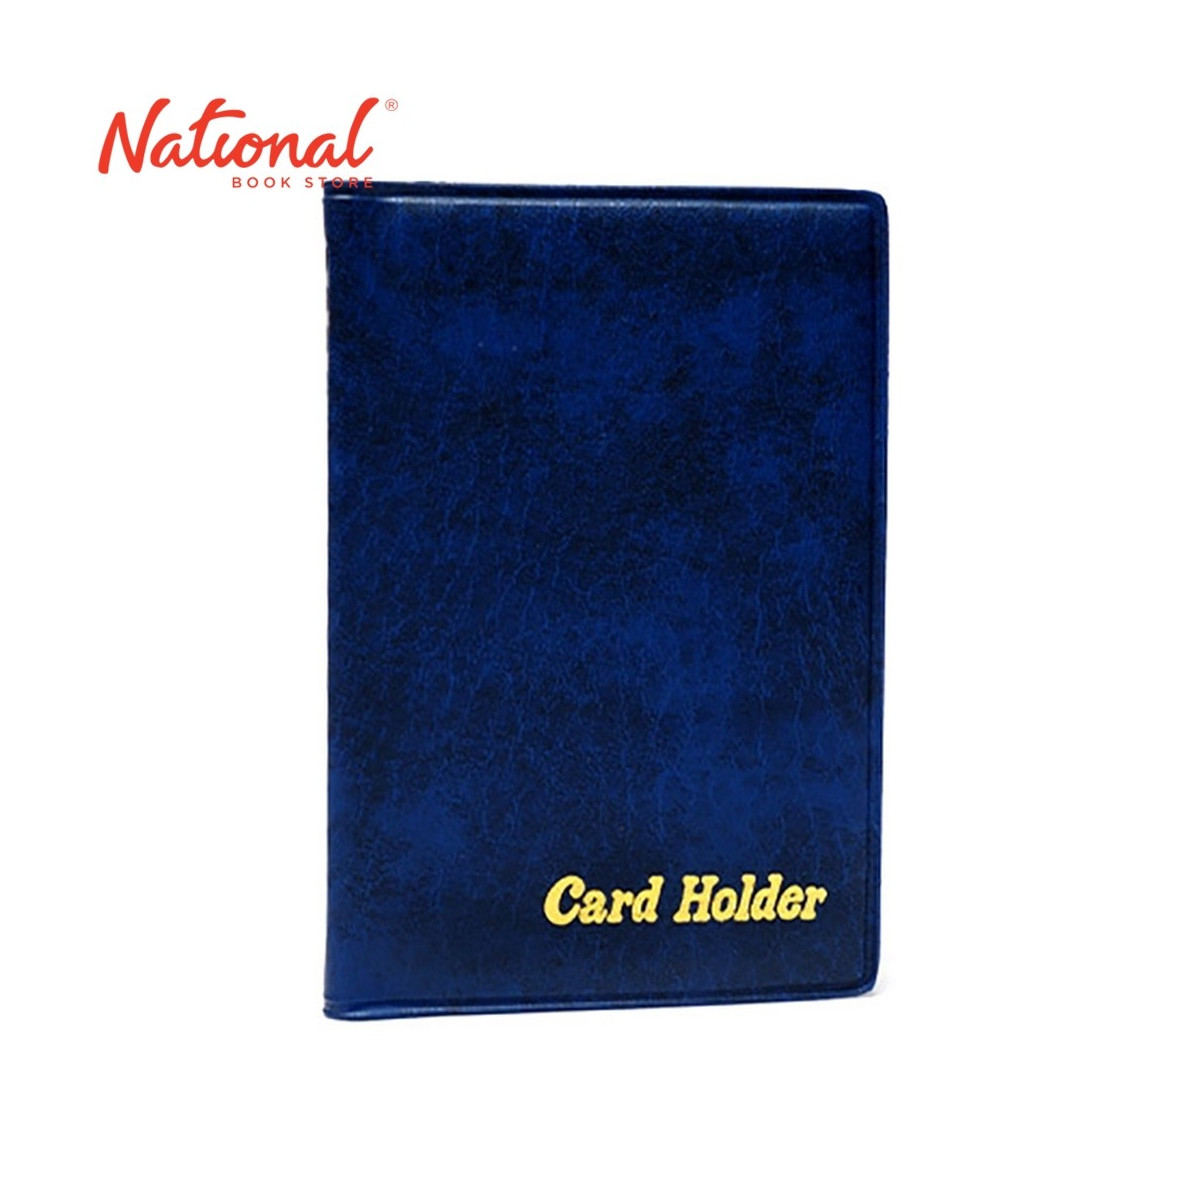 NAME CARD HOLDER 6001